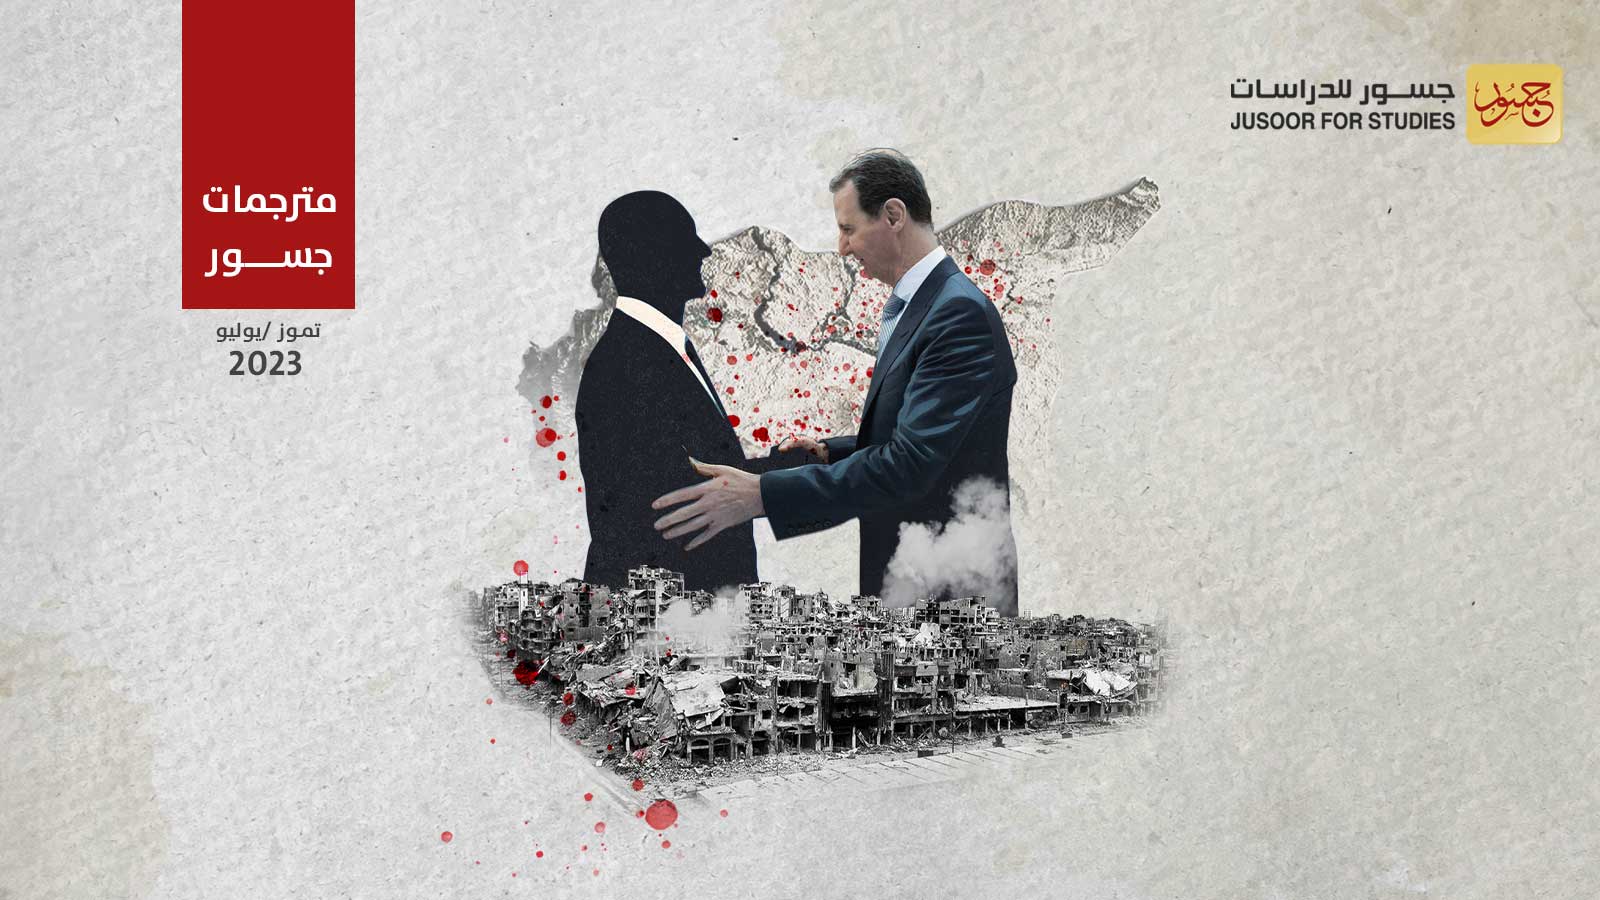 نصيحة لقادة العالم الذين يعتزمون لقاء بشار الأسد : لا تقابلوه